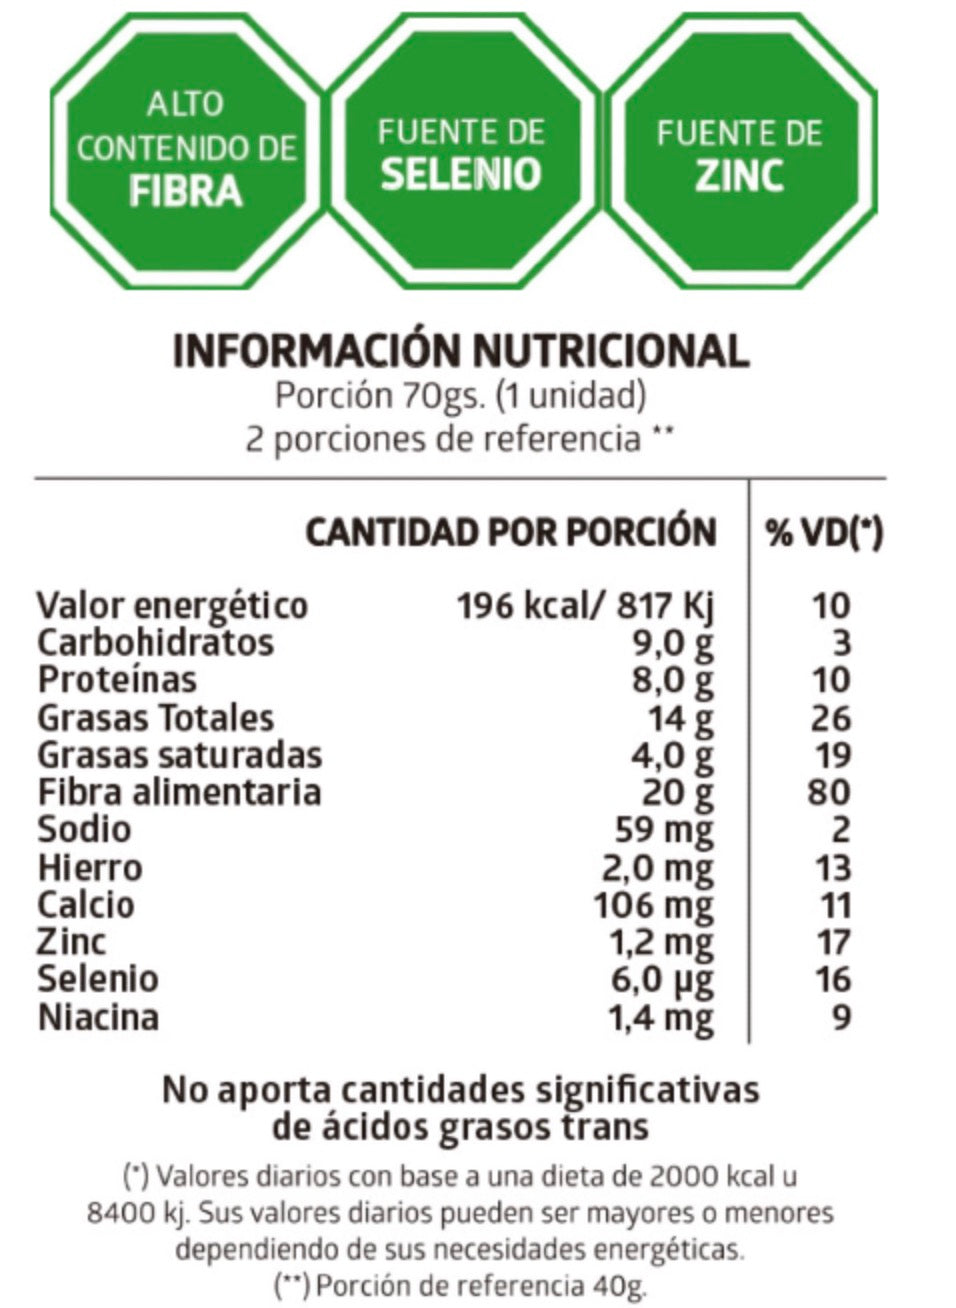 Alfajores Sin Azúcares de Semillas y Frutos Secos Rellenos con Dulce de Leche - x8 unidades de 70 gs c/u